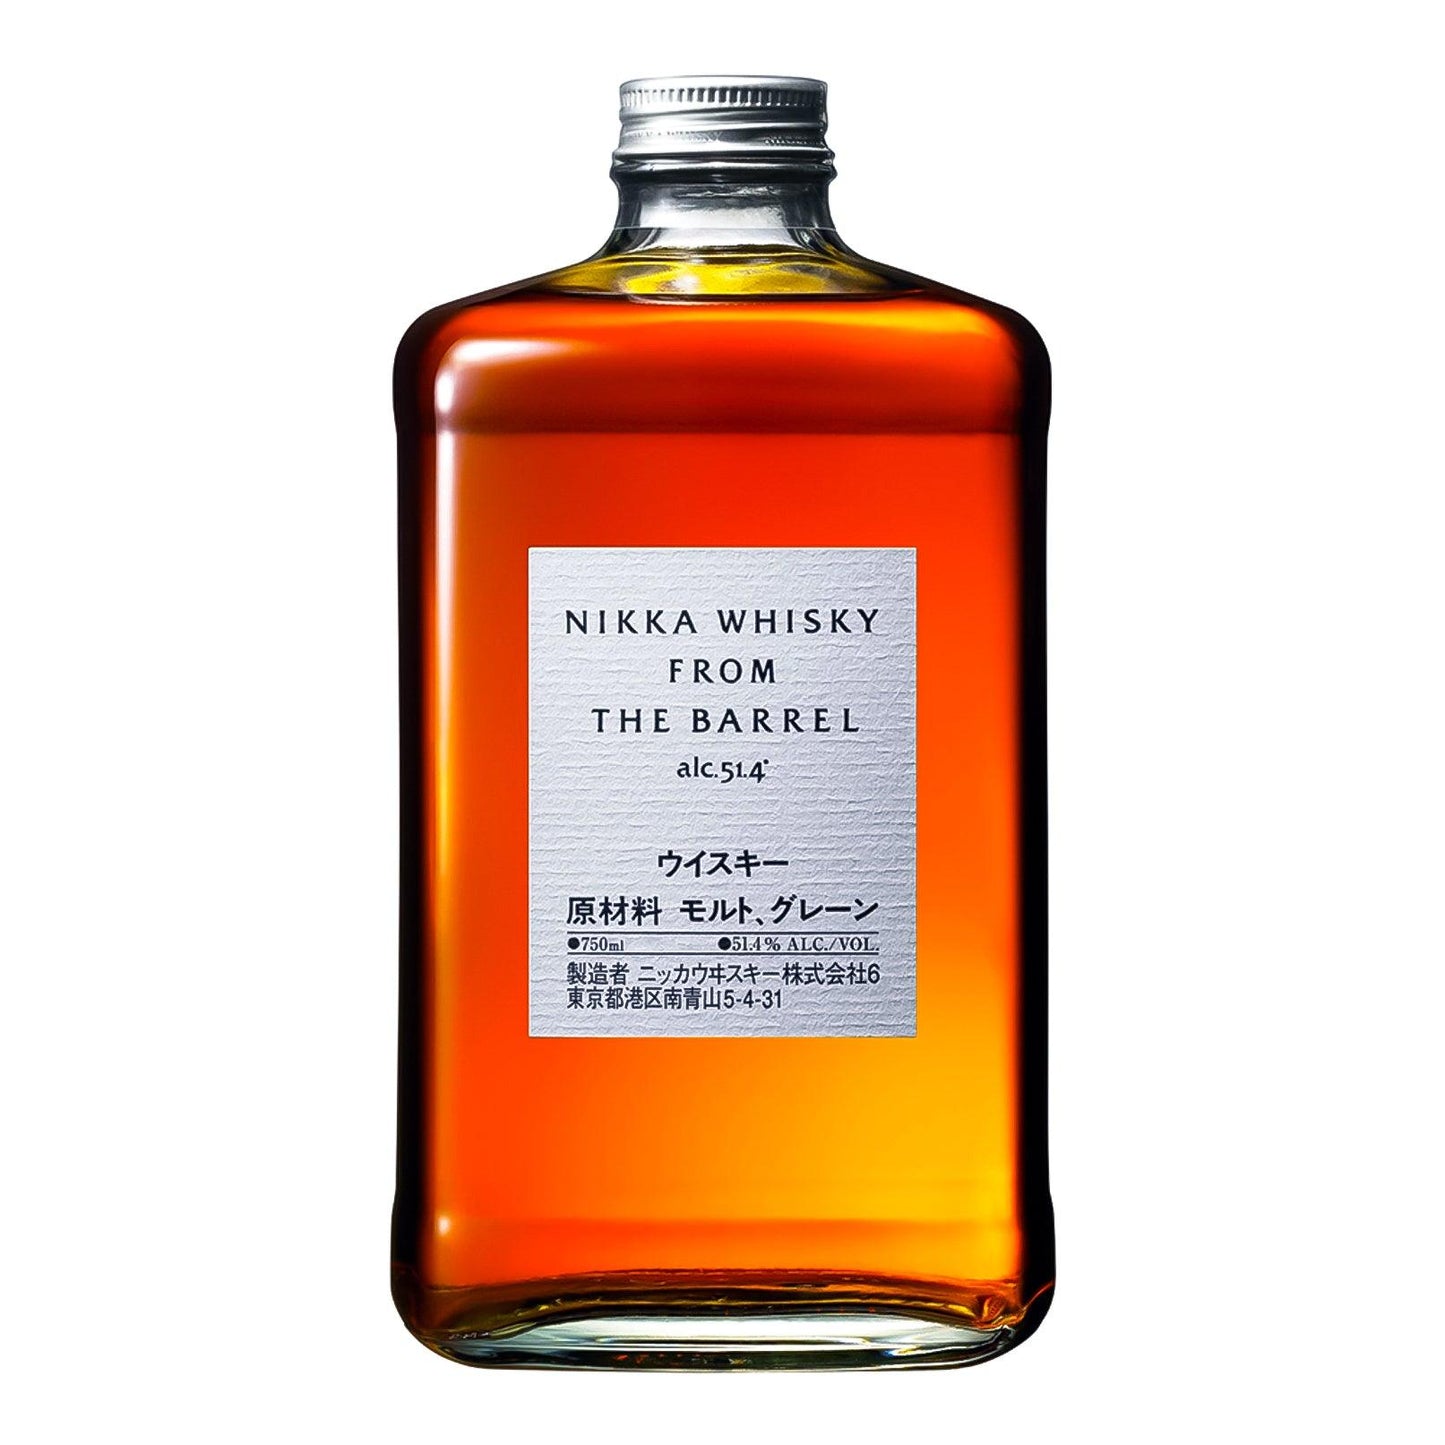 Nikka Whisky From The Barrel - Whisky Grail